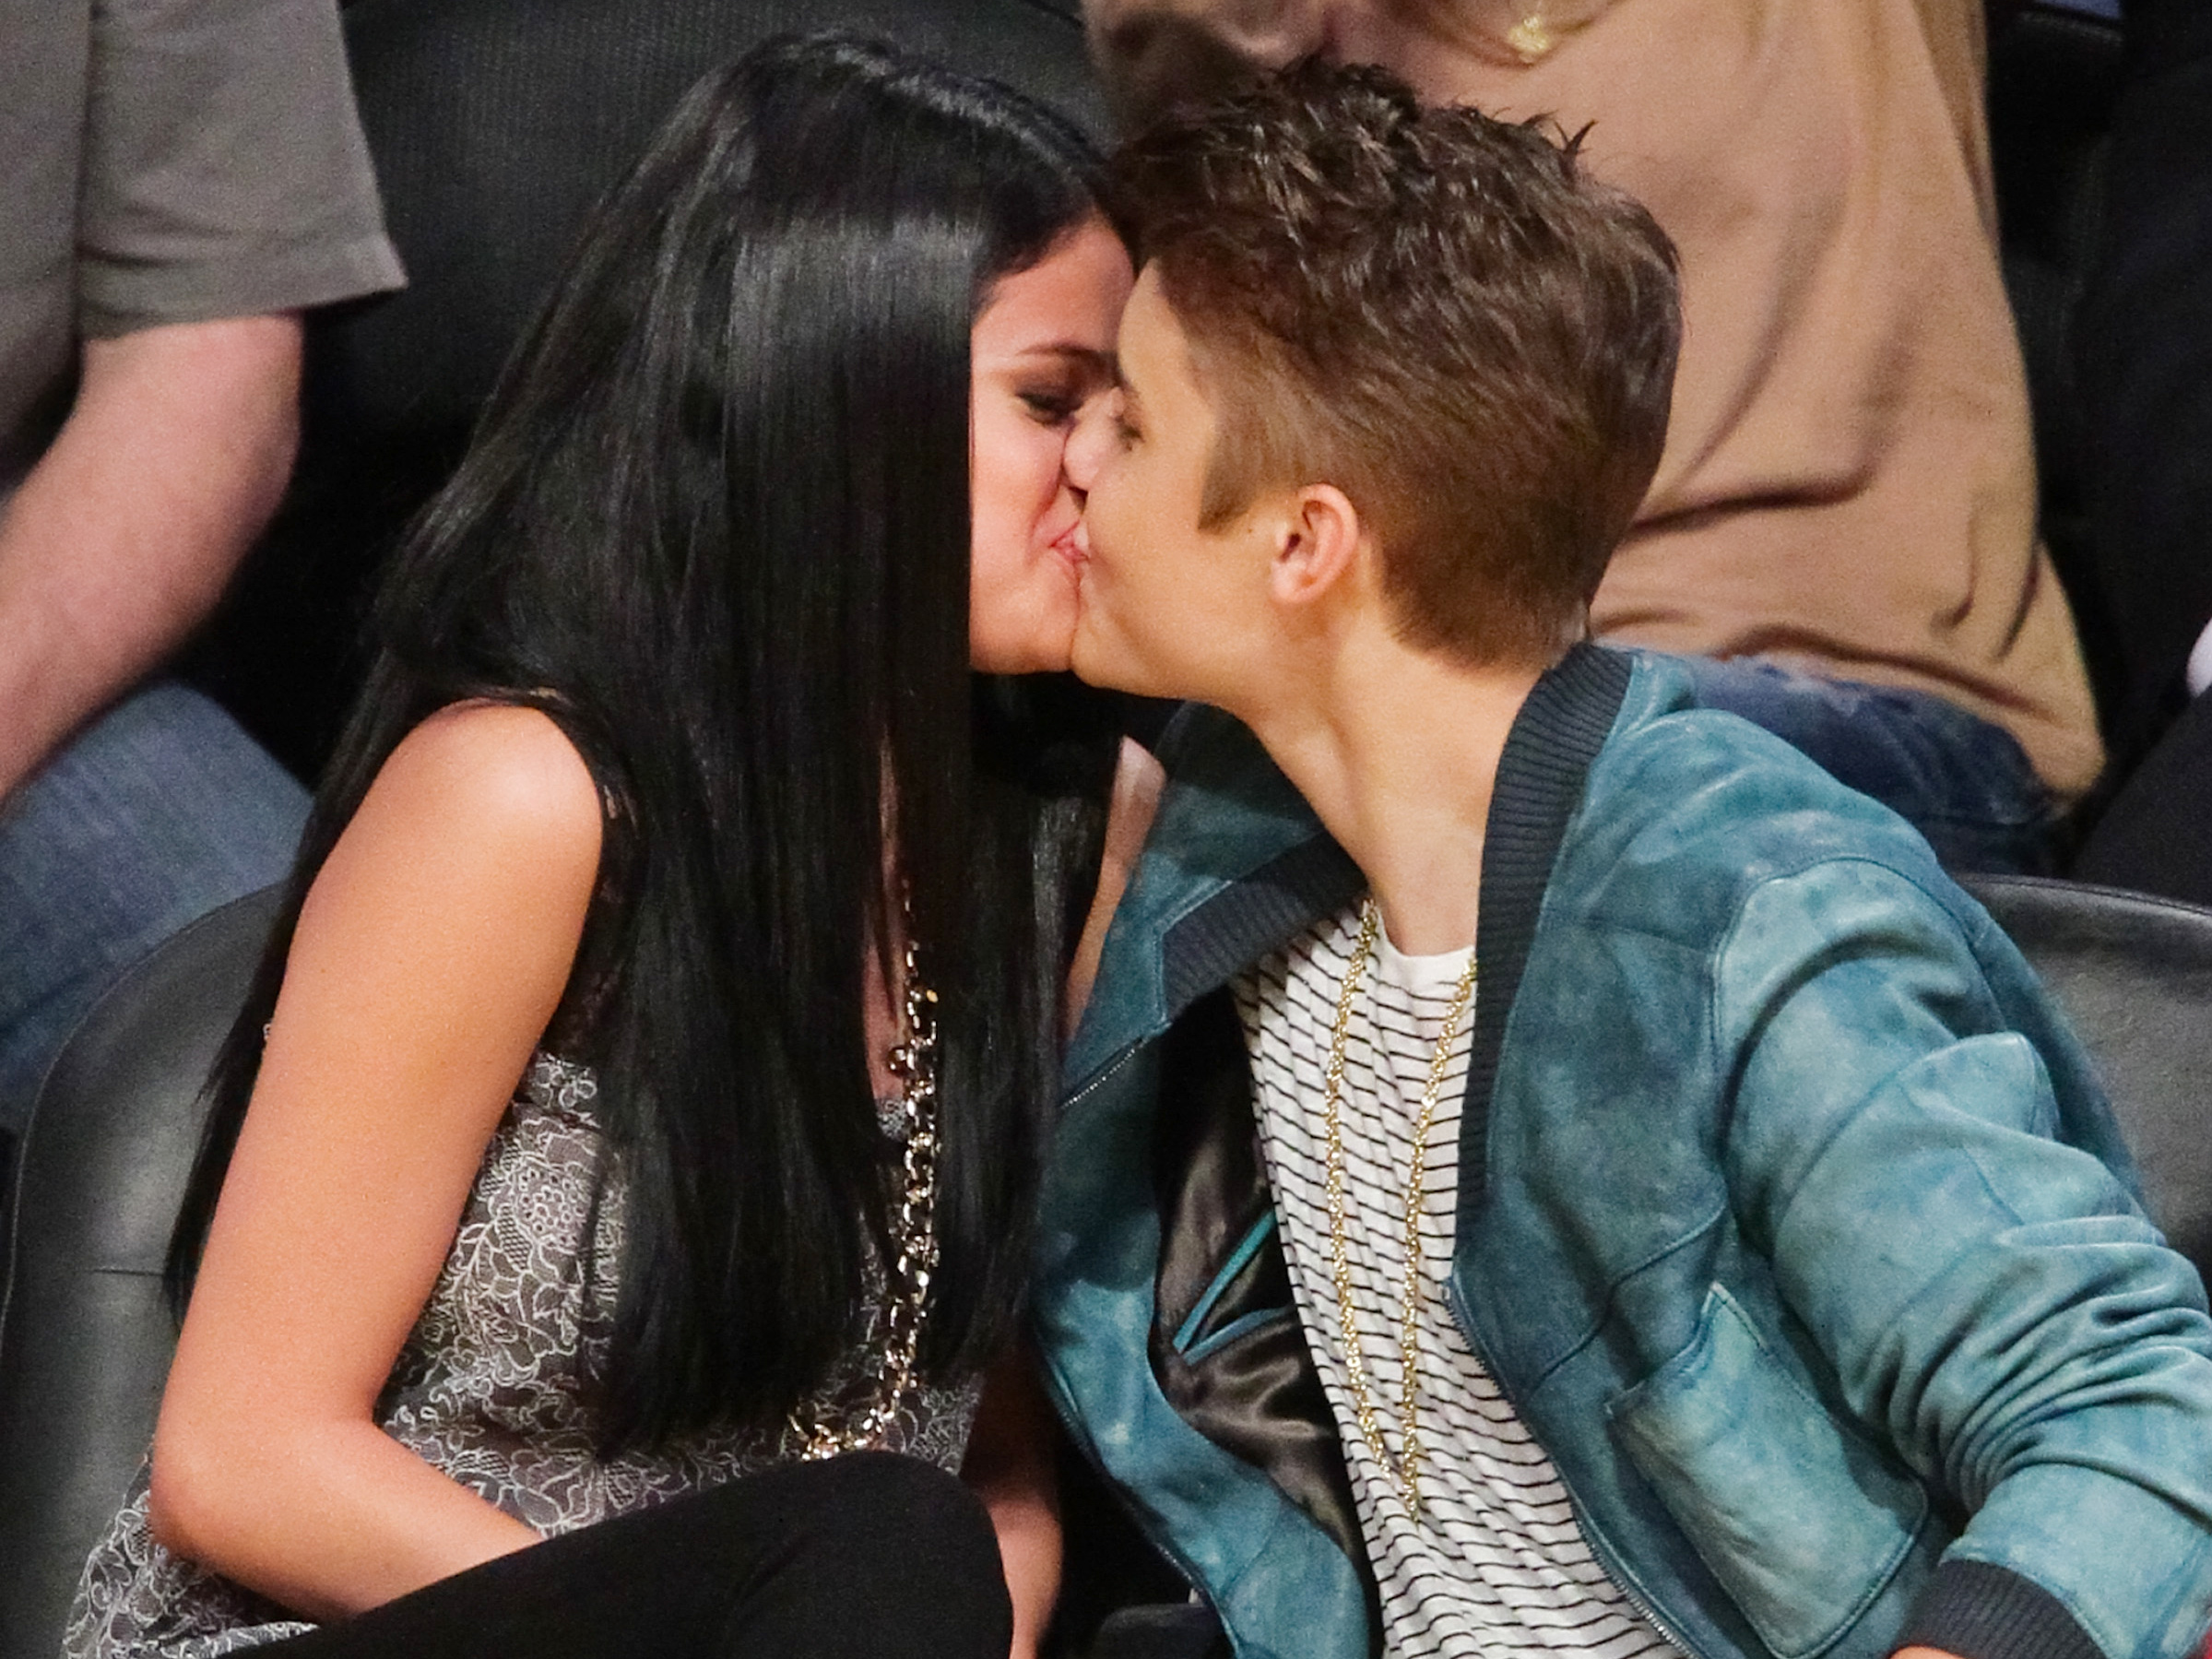 FOTO: Selena și Bieber au fost fotografiați în timp ce se sărutau și internetul a luat-o razna